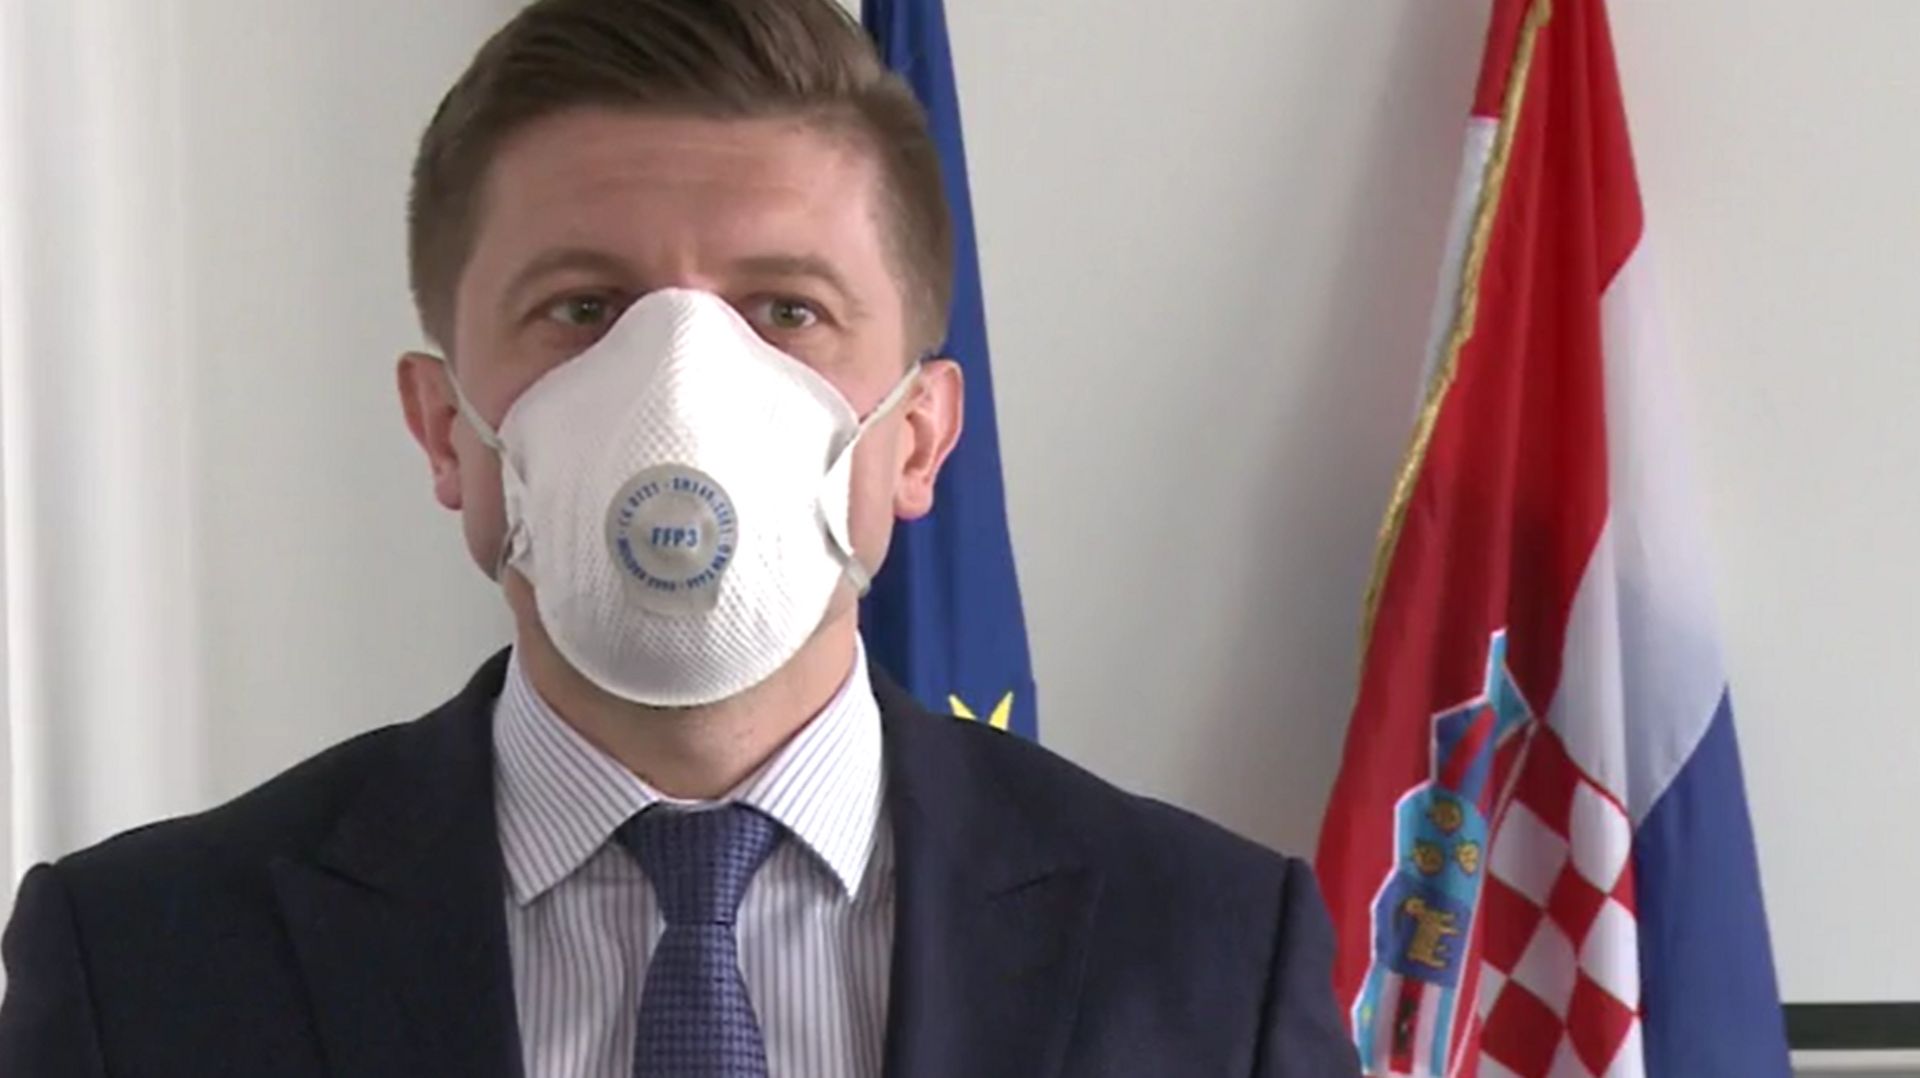 Le premier ministre Croate Zdravko Maric, a présidé ce conseil virtuel. Dans une vidéo il parle du contenu inédit de la téléconférence, un masque sur le visage.  